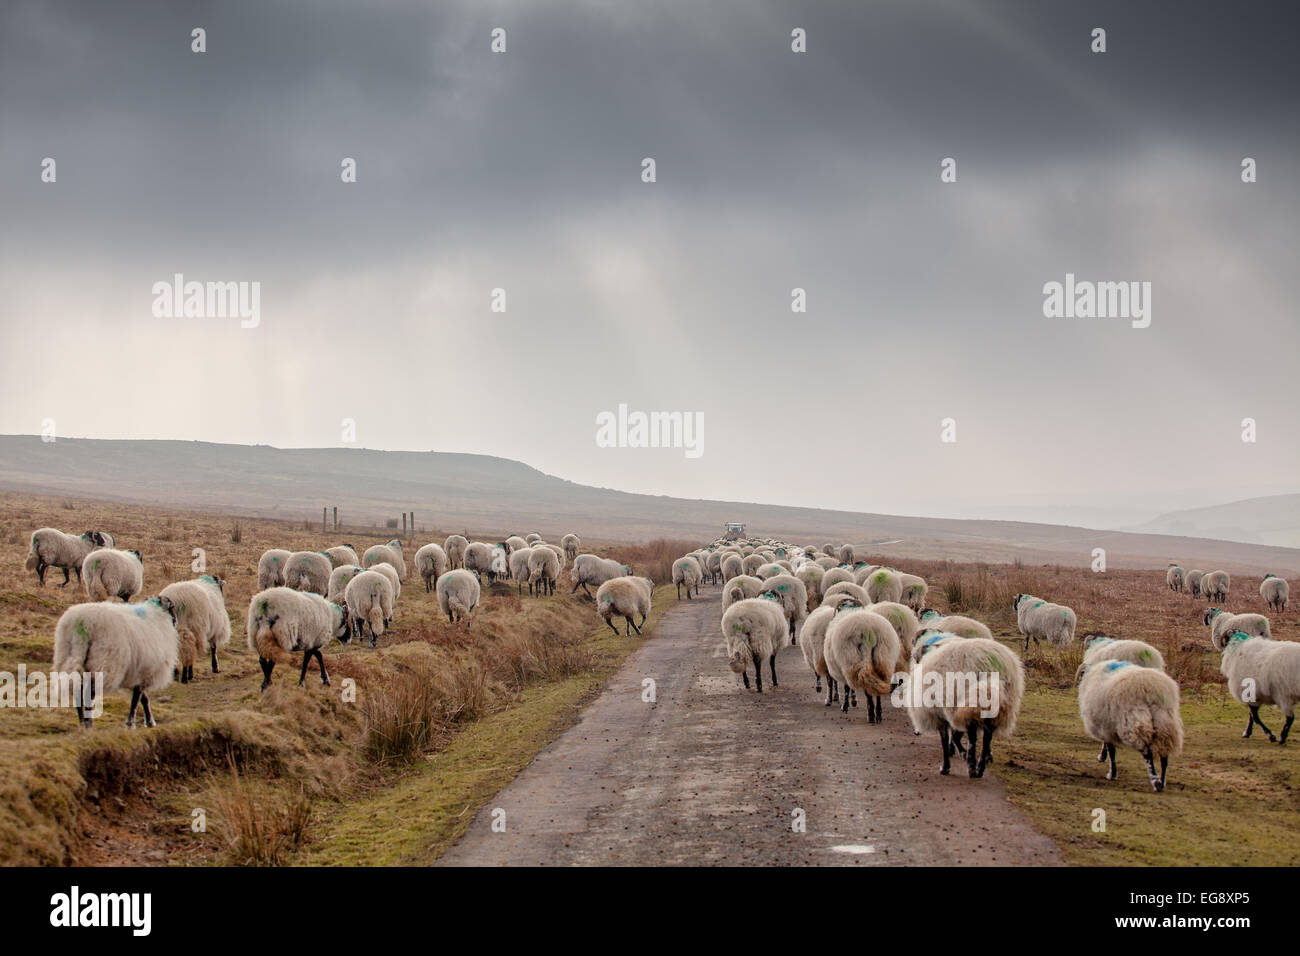 Schaf nach Bauer, ergänzende Futtermittel Swaledale Schafen im Winter Vorfrühling auf die North York Moors geben wird. Stockfoto